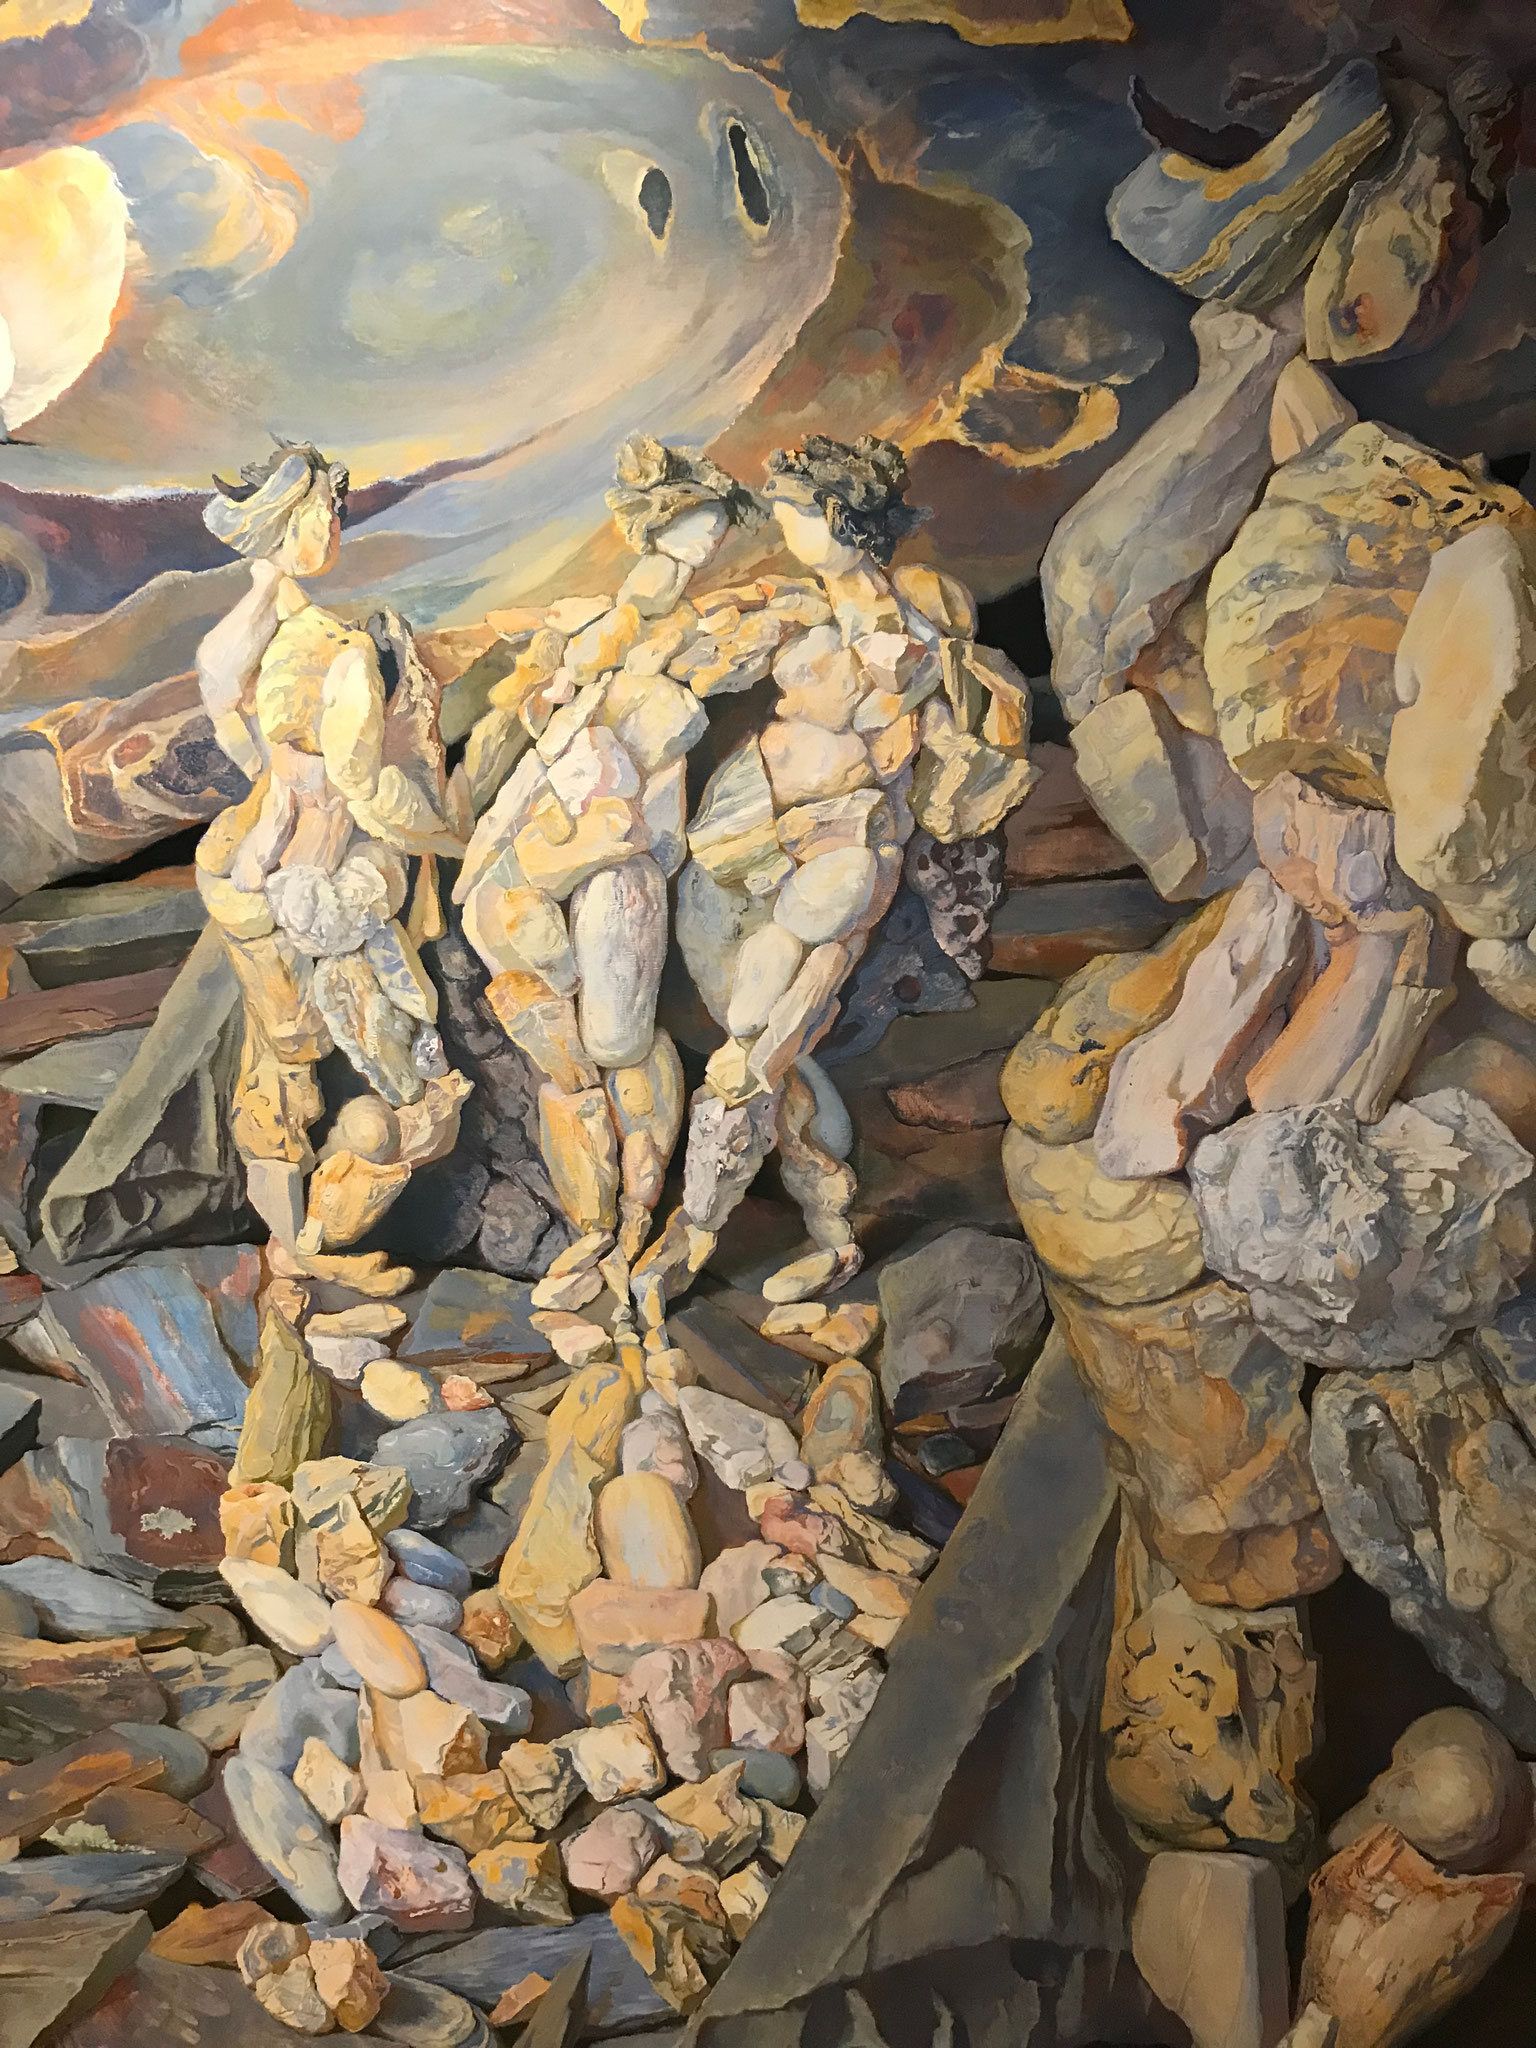 Am Cap de Creus liess sich Dali unter anderem zu diesen "Steinbildern" inspirieren.